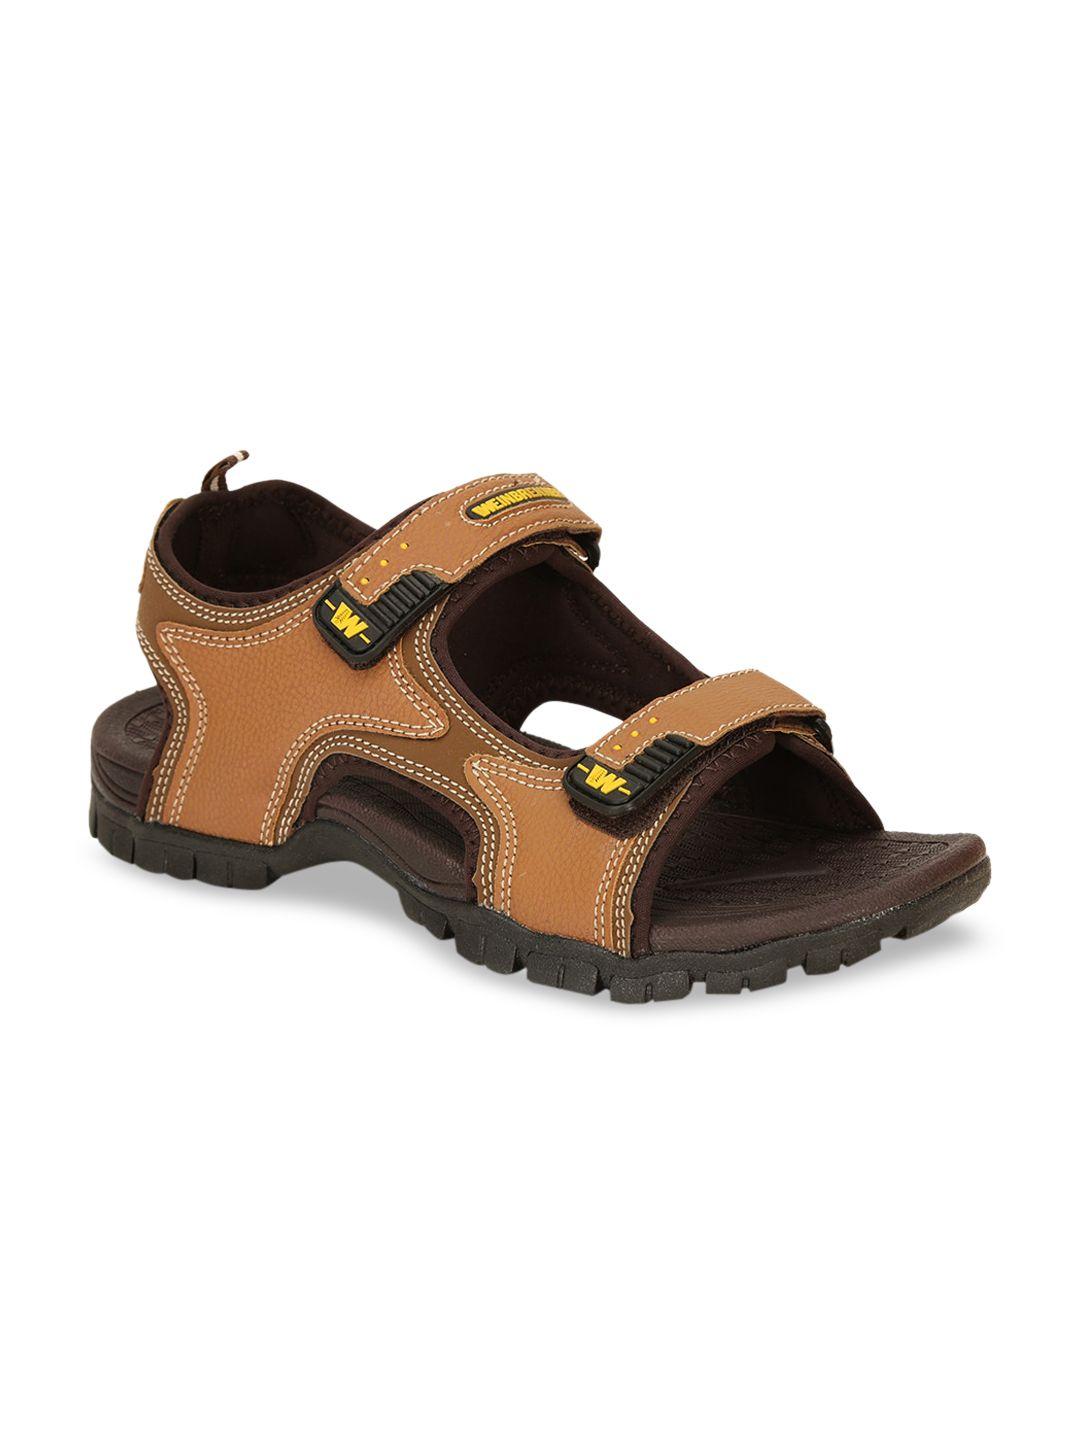 weinbrenner-men-brown-solid-sports-sandals